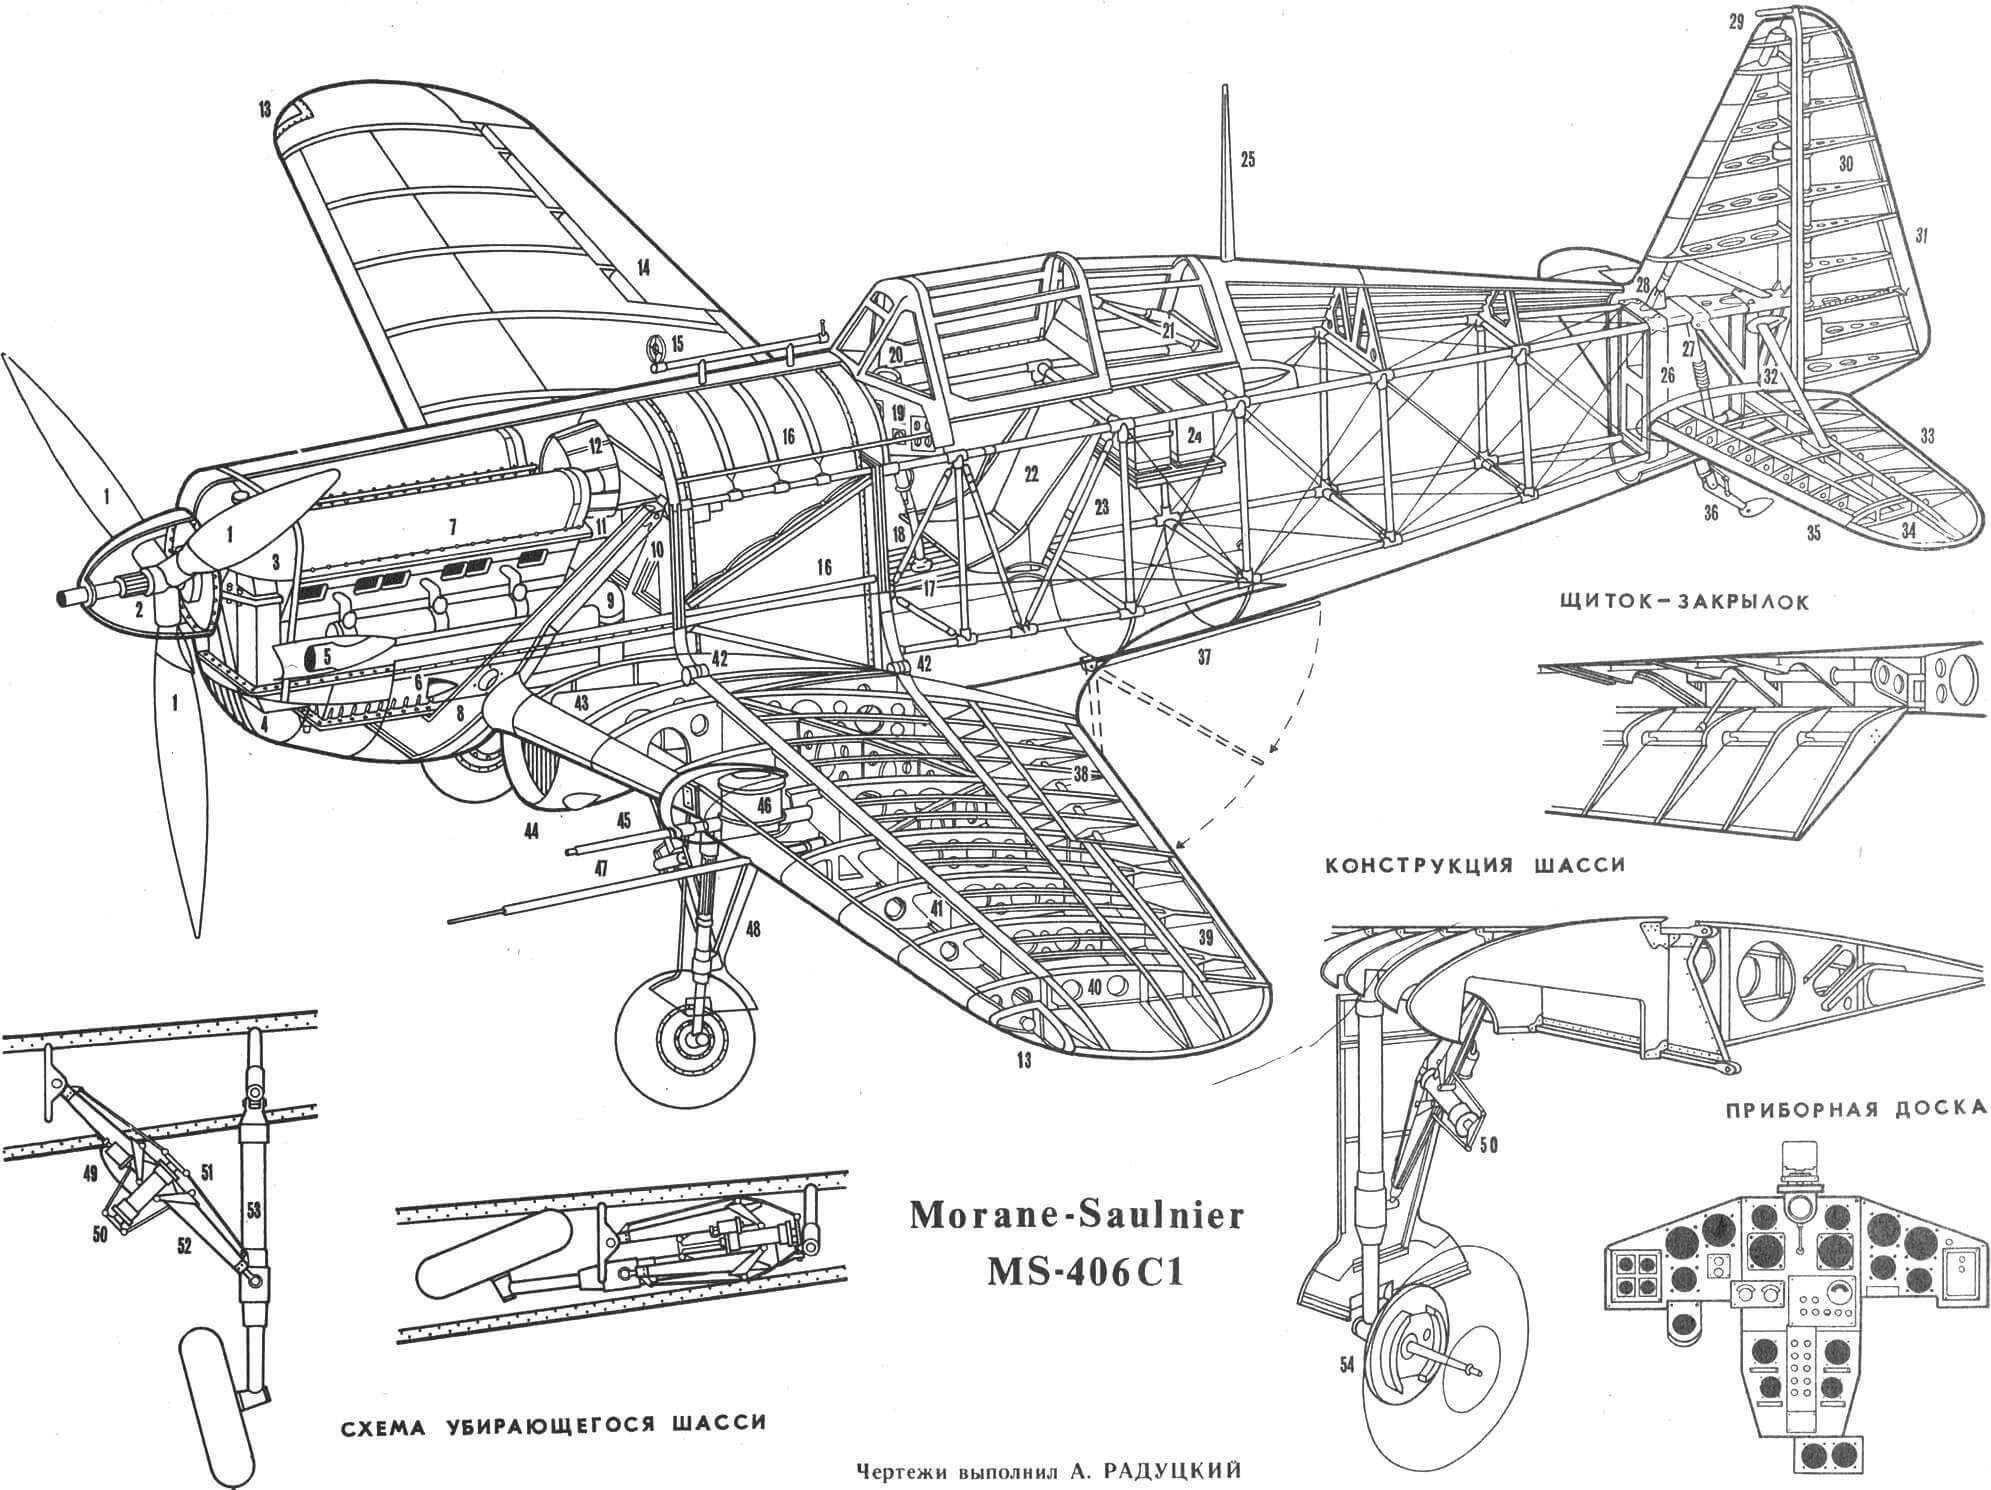 Одноместный истребитель MS-406 C1